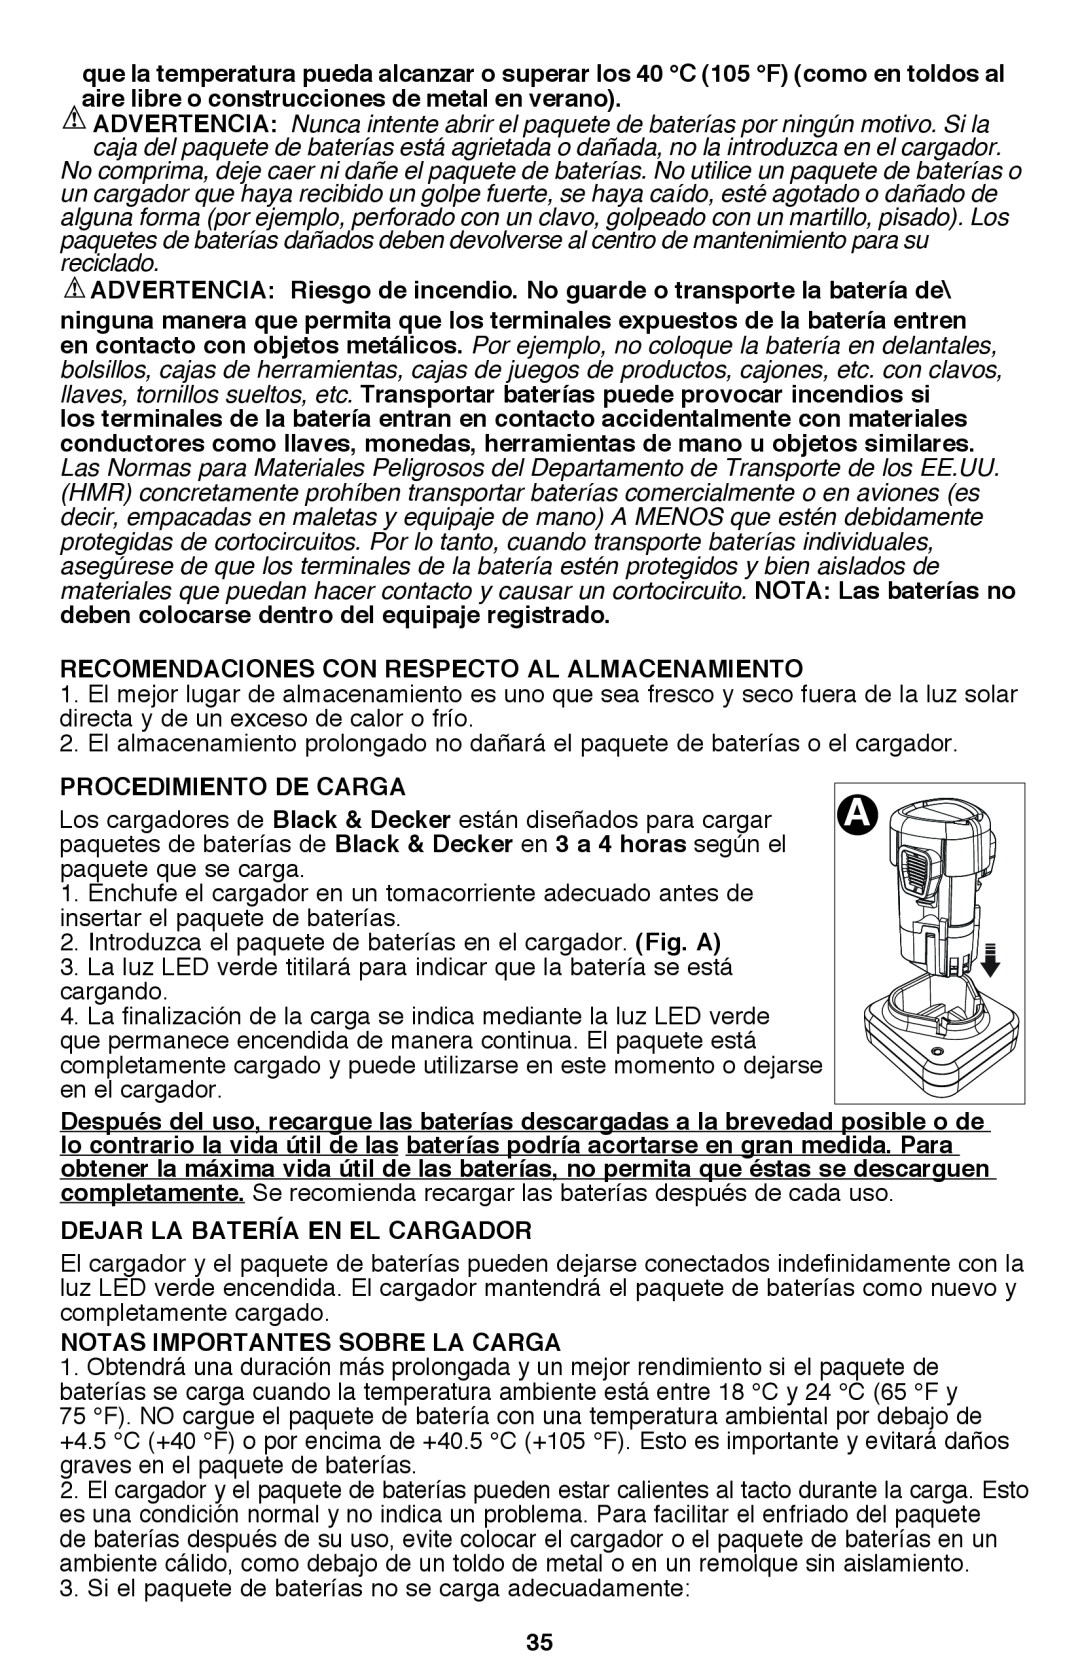 Black & Decker PSL12 instruction manual Recomendaciones con respecto al almacenamiento 